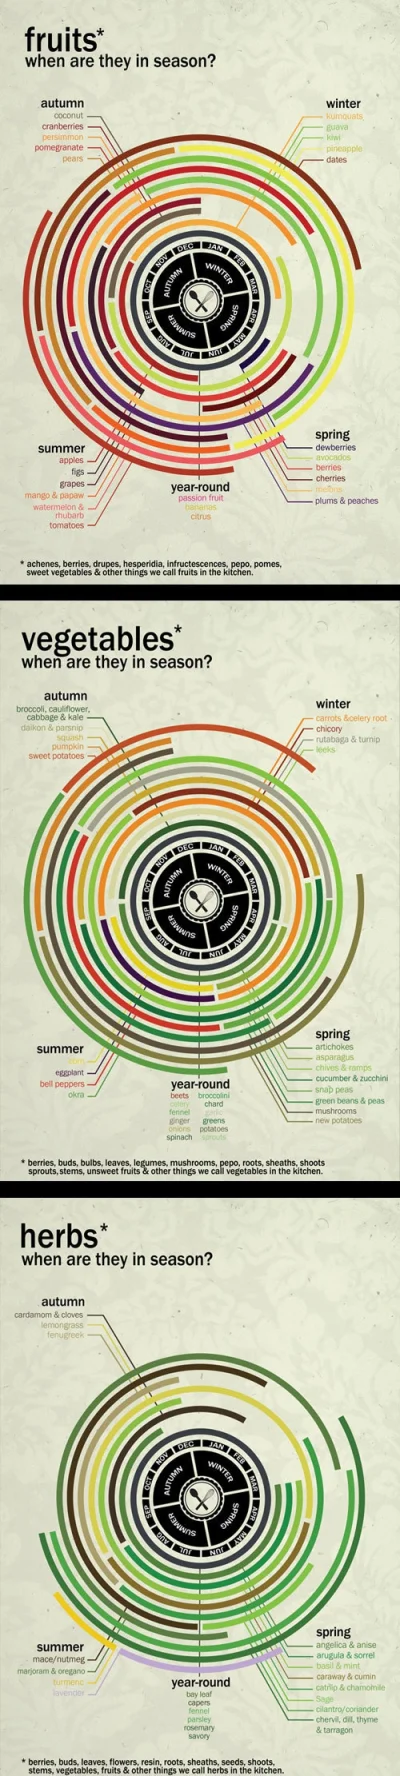 Sieloo - Infografika pokazująca kiedy jest sezon na warzywa, owoce i zioła.

#gotuj...